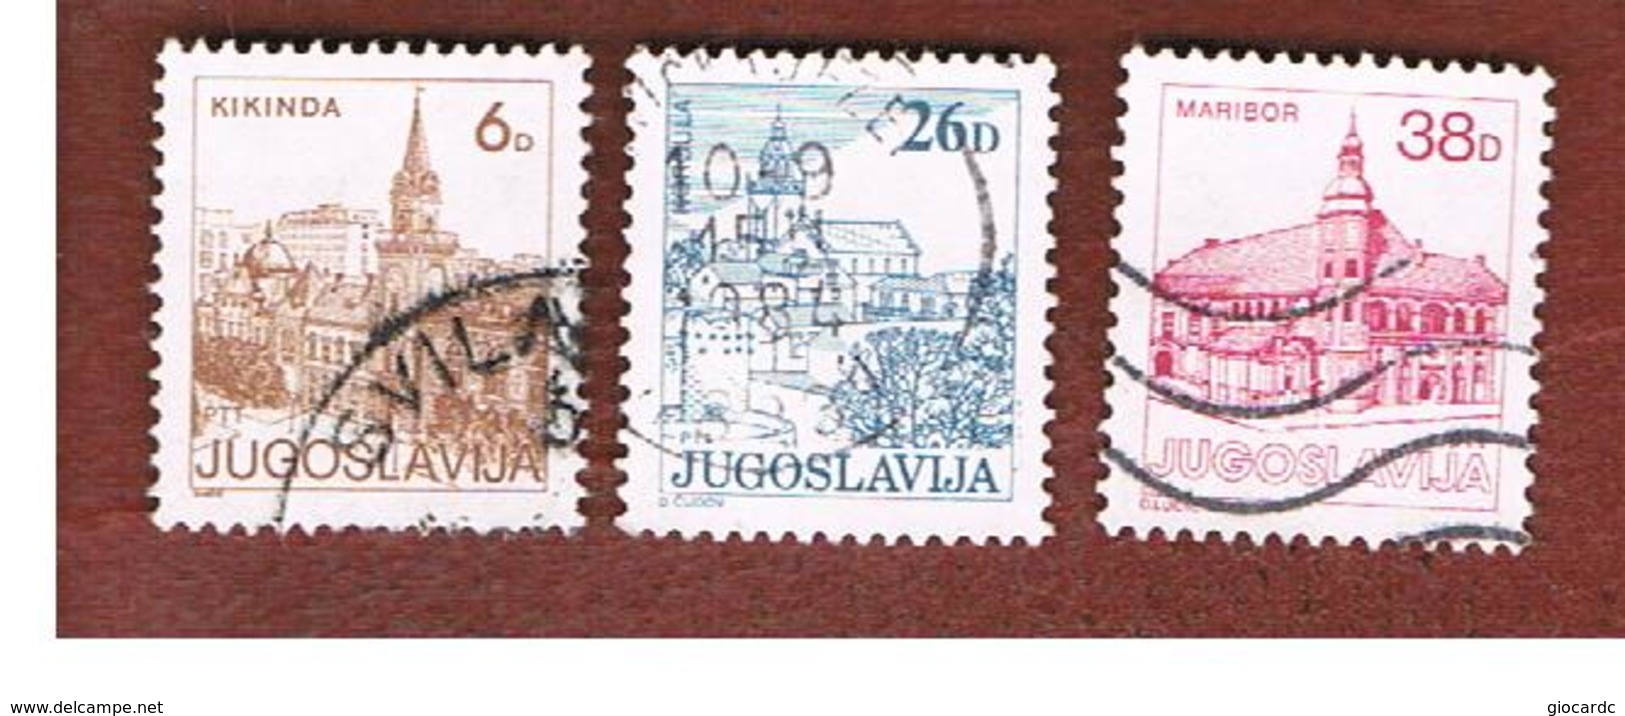 JUGOSLAVIA (YUGOSLAVIA)   - SG 1672.1679   -    1984  TOURISM          -  USED - Usados